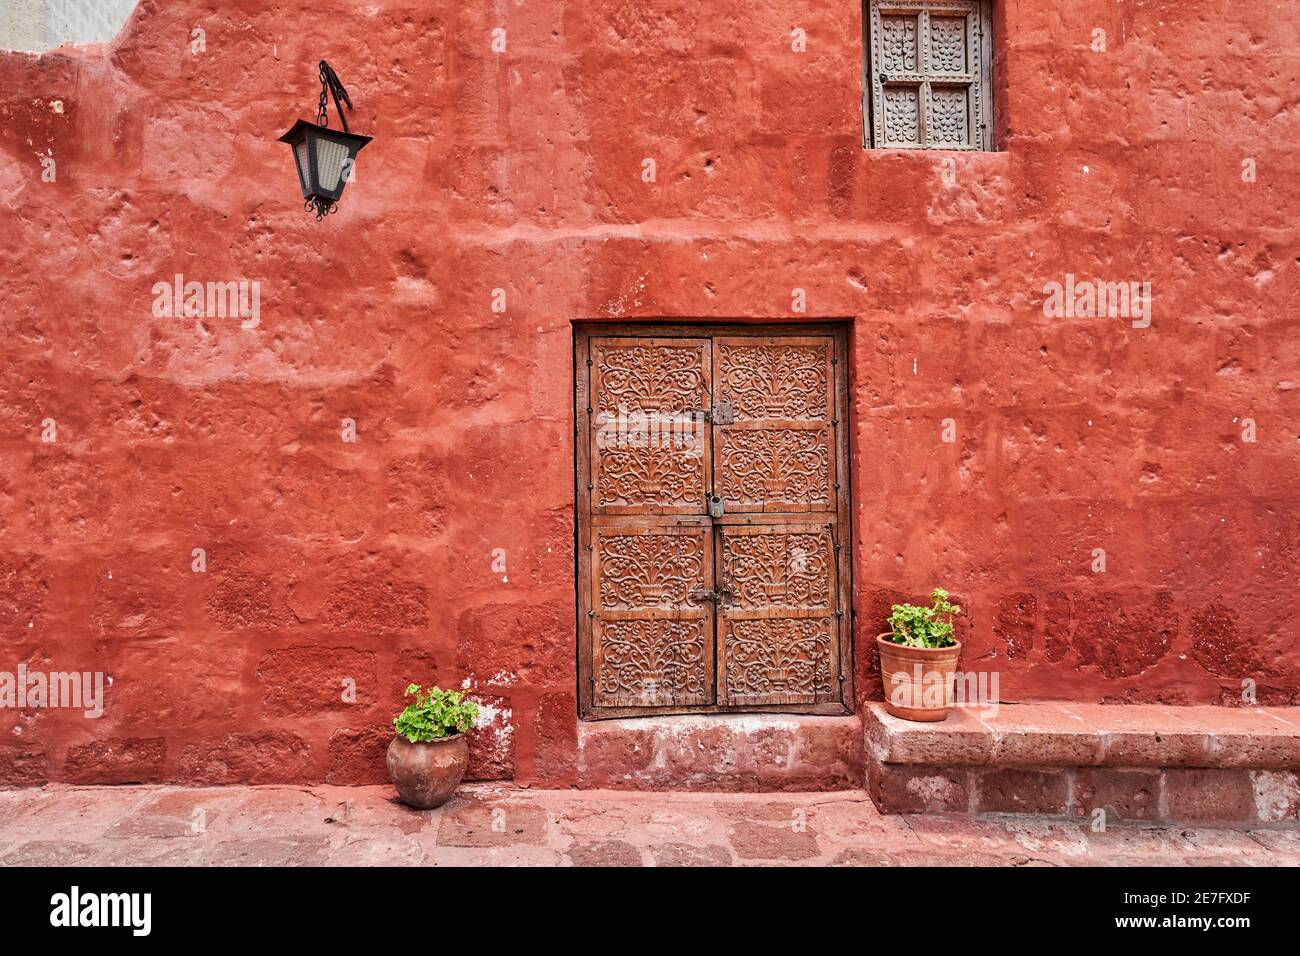 edificio colonial español de color rojo intenso en la fachada, una linterna  y una antigua puerta de madera con adornos Fotografía de stock - Alamy